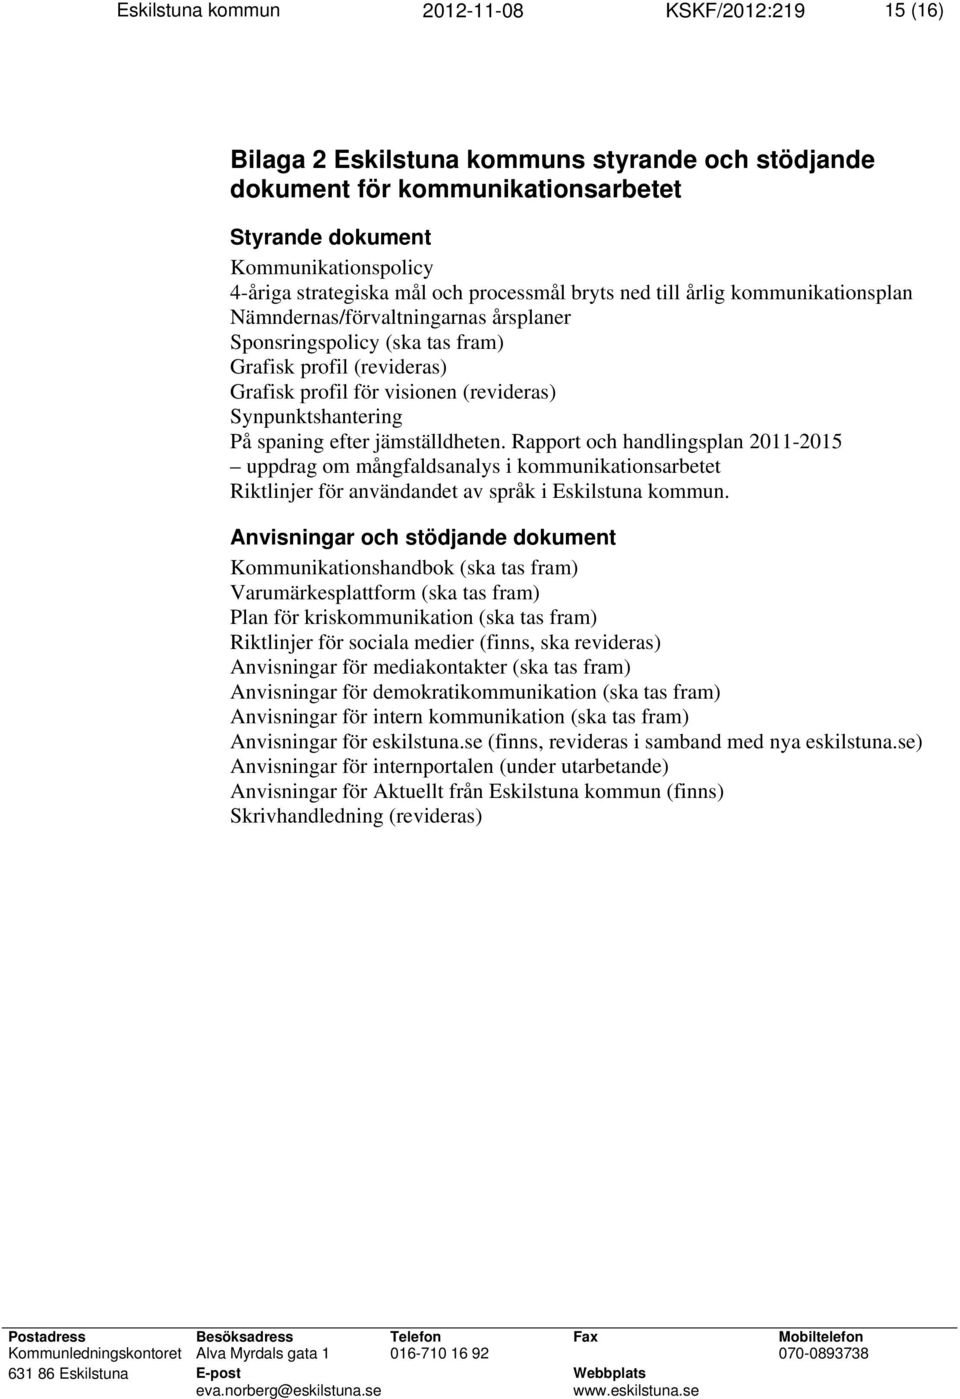 Synpunktshantering På spaning efter jämställdheten. Rapport och handlingsplan 2011-2015 uppdrag om mångfaldsanalys i kommunikationsarbetet Riktlinjer för användandet av språk i Eskilstuna kommun.